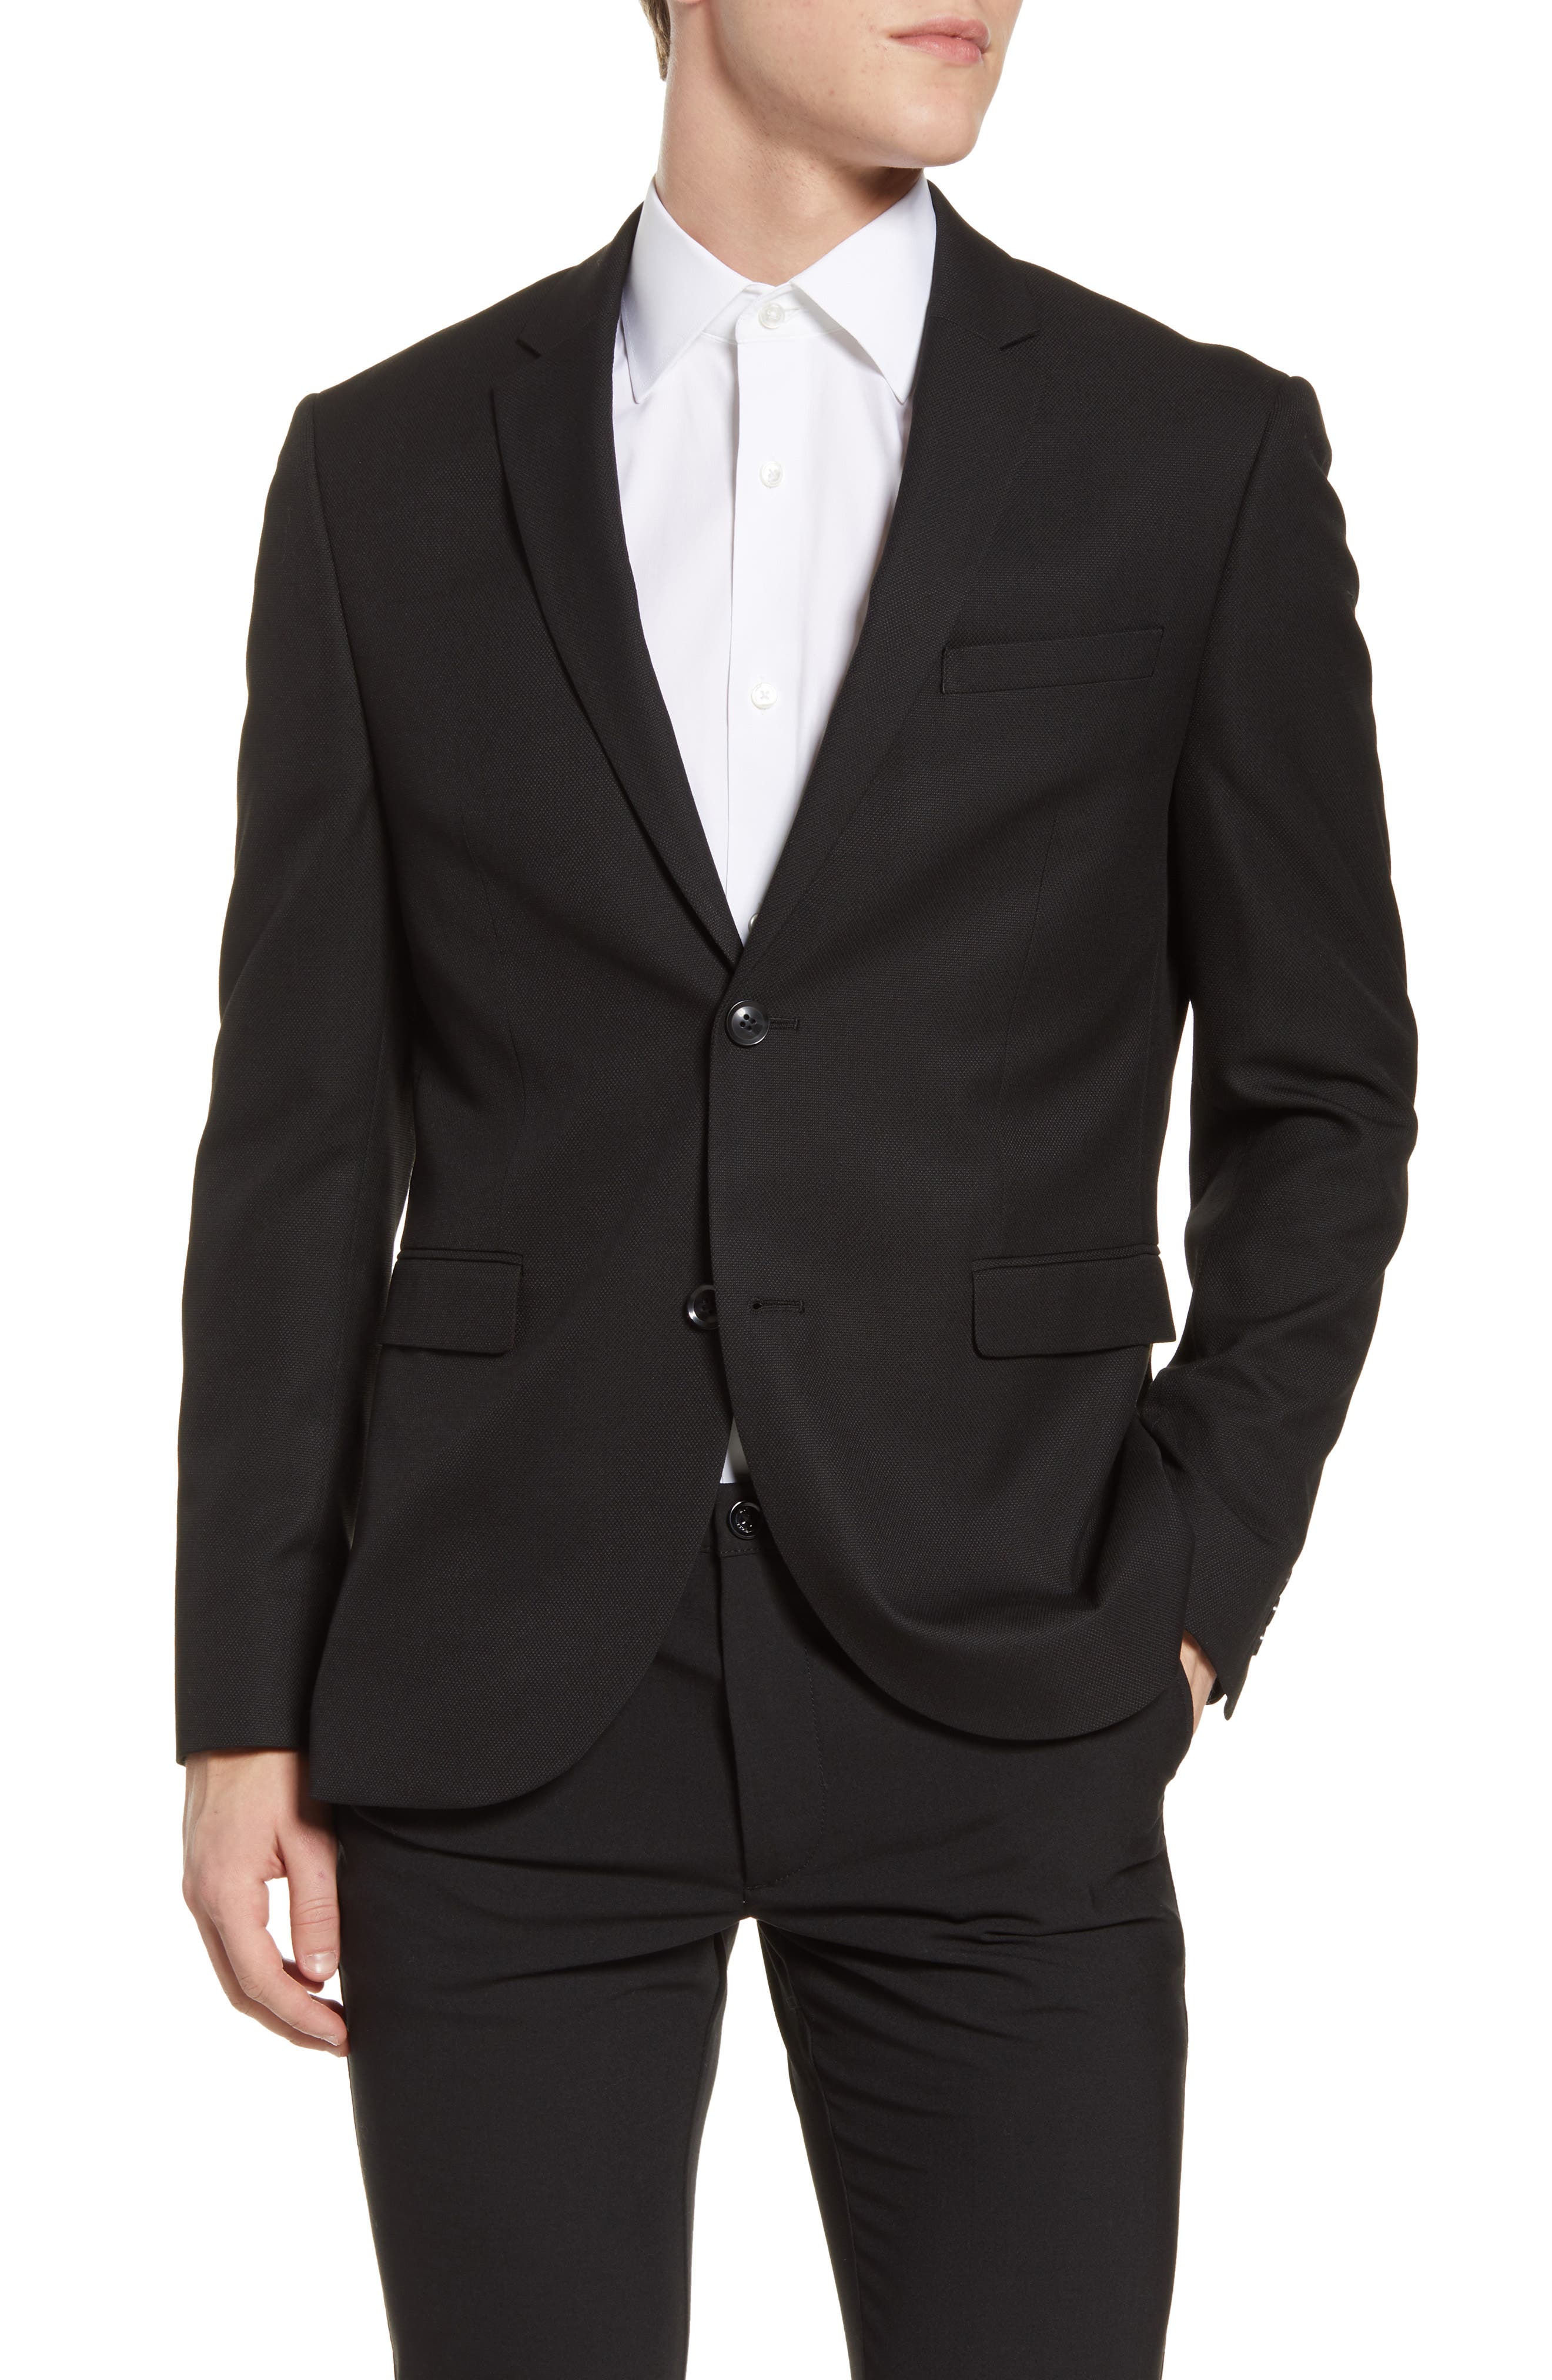 Blazer for Men Slim Fit Suit Jacket Sport Coats Formal Dress Jacket 2 Button